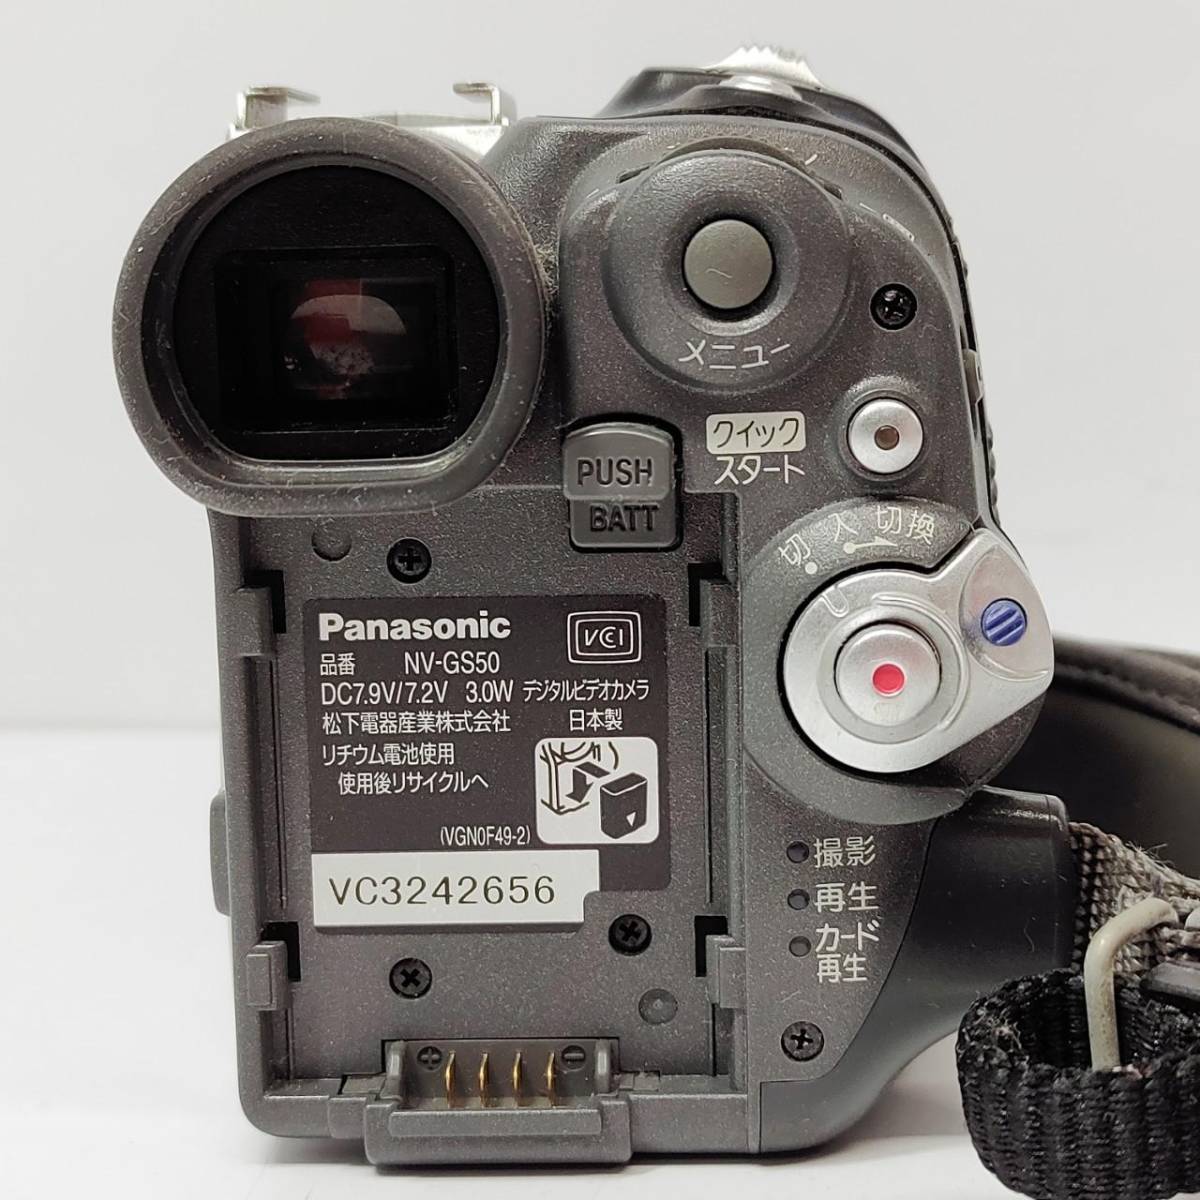 ◎パナソニック NV-GS50 デジタルビデオカメラ Panasonic MiniDVビデオカメラ 10x OPTICAL ZOOM 2.3-23㎜ 1:1.8 映像機器 S1284_画像6